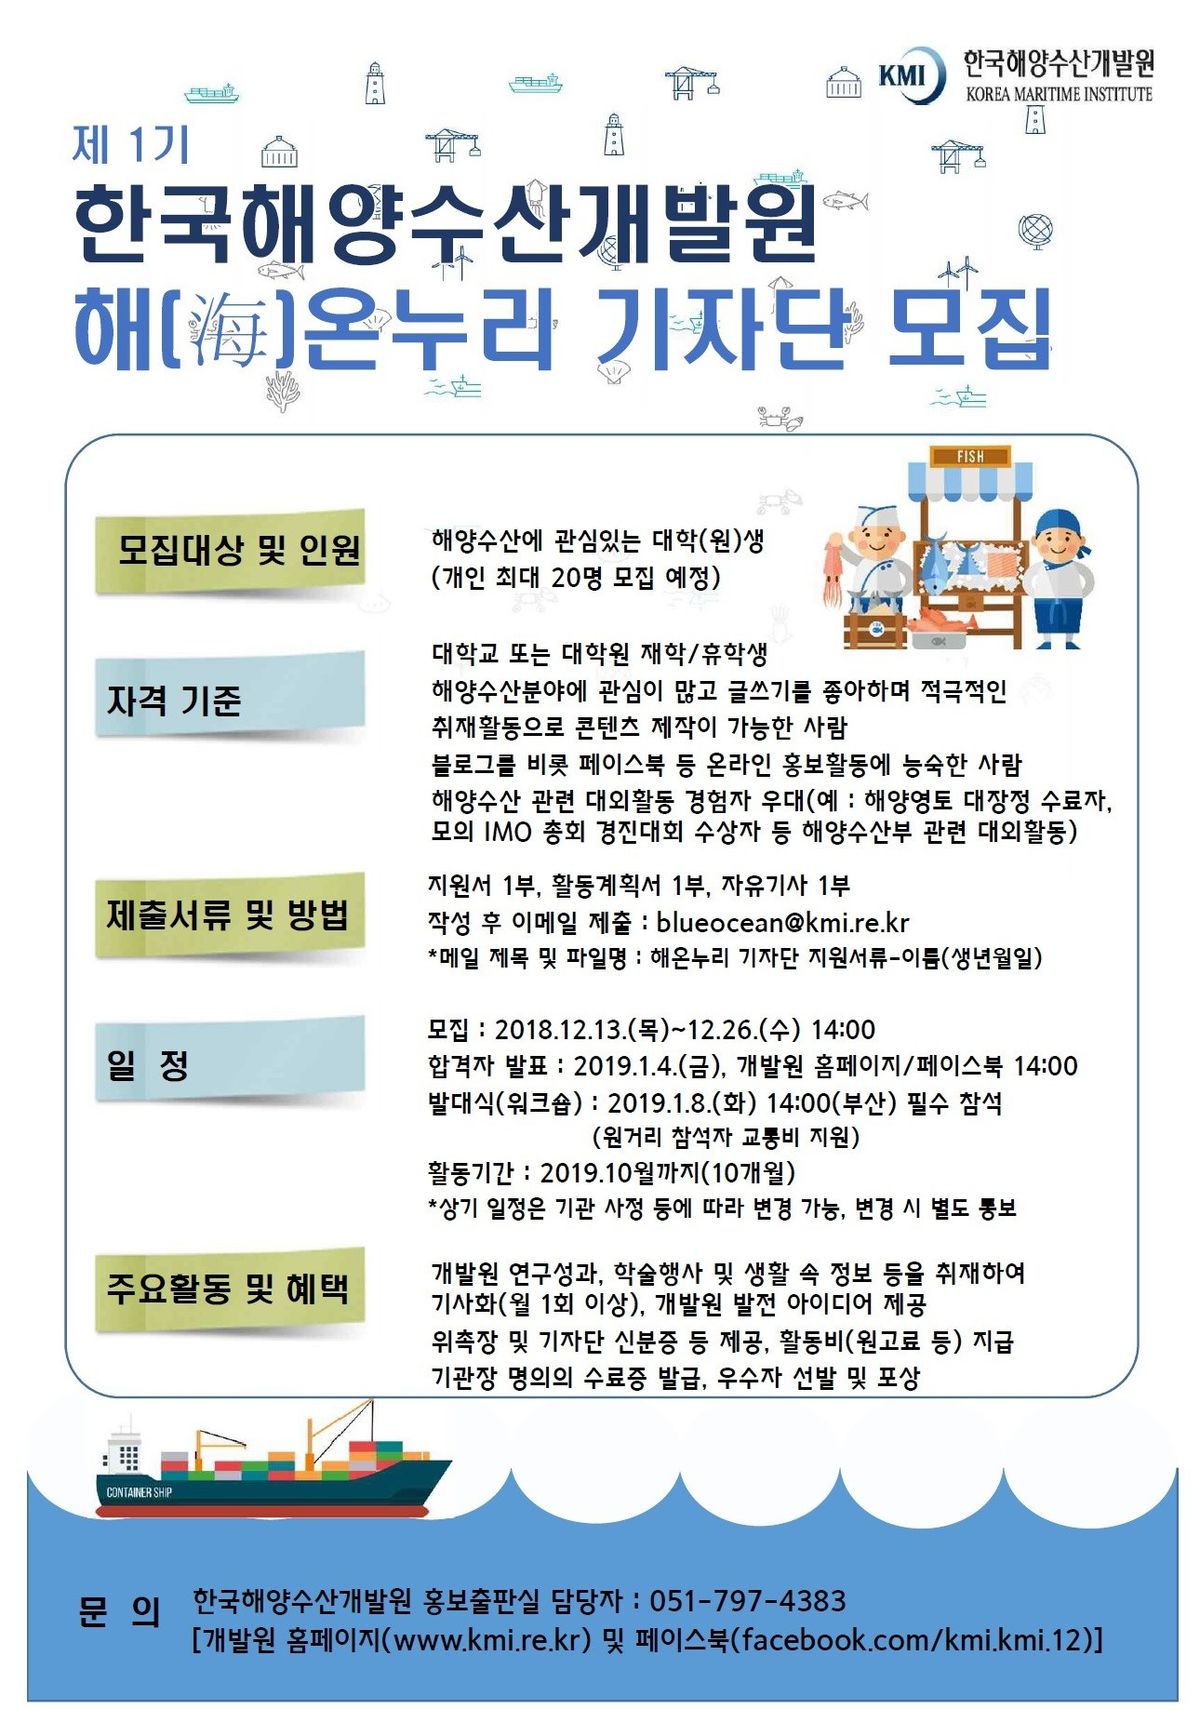 4-해온누리기자단모집공고.jpg : 한국해양수산개발원 블로그 ‘해온누리 기자단’ 모집